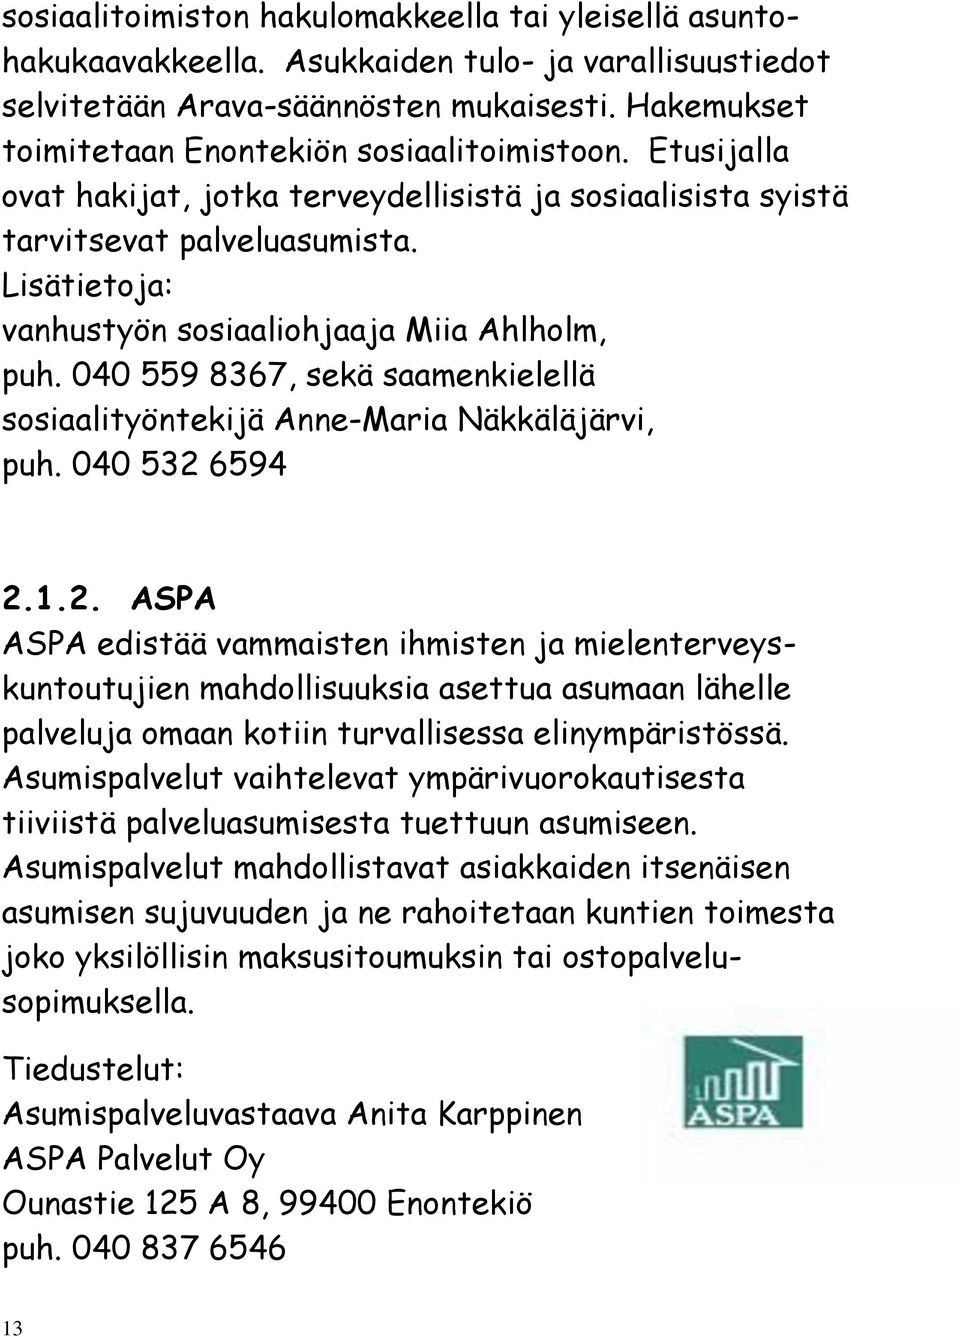 Lisätietoja: vanhustyön sosiaaliohjaaja Miia Ahlholm, puh. 040 559 8367, sekä saamenkielellä sosiaalityöntekijä Anne-Maria Näkkäläjärvi, puh. 040 532 